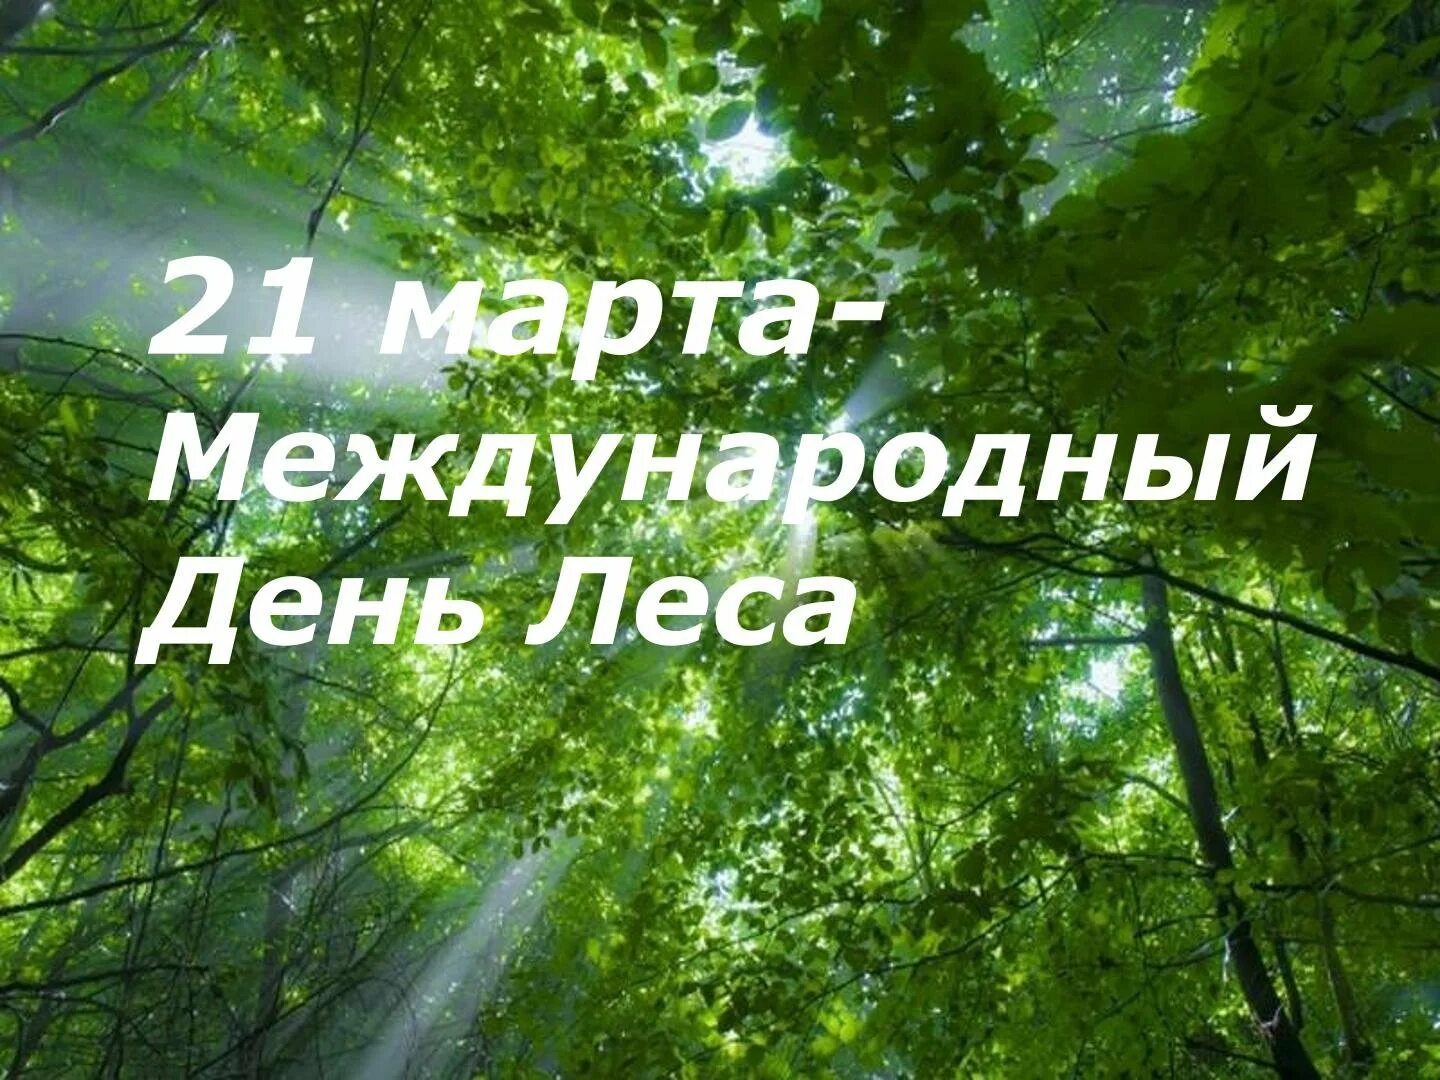 21 международный день леса. Международный день лесов. Междуанродныйдень лесов. Международныйдерь лесов.